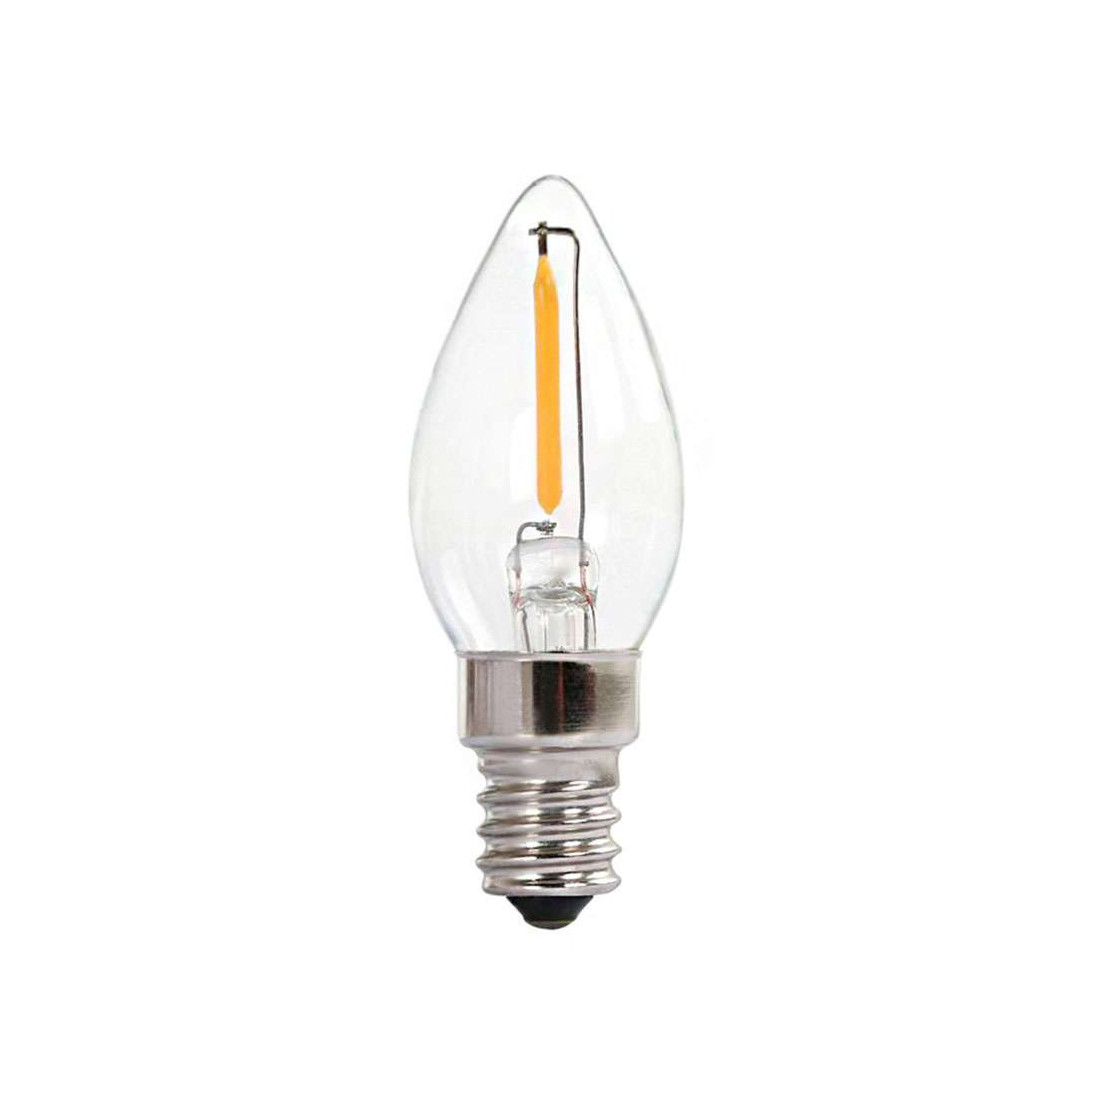 Lampe à LED et halogène 12 et 230 volts - Provence Outillage